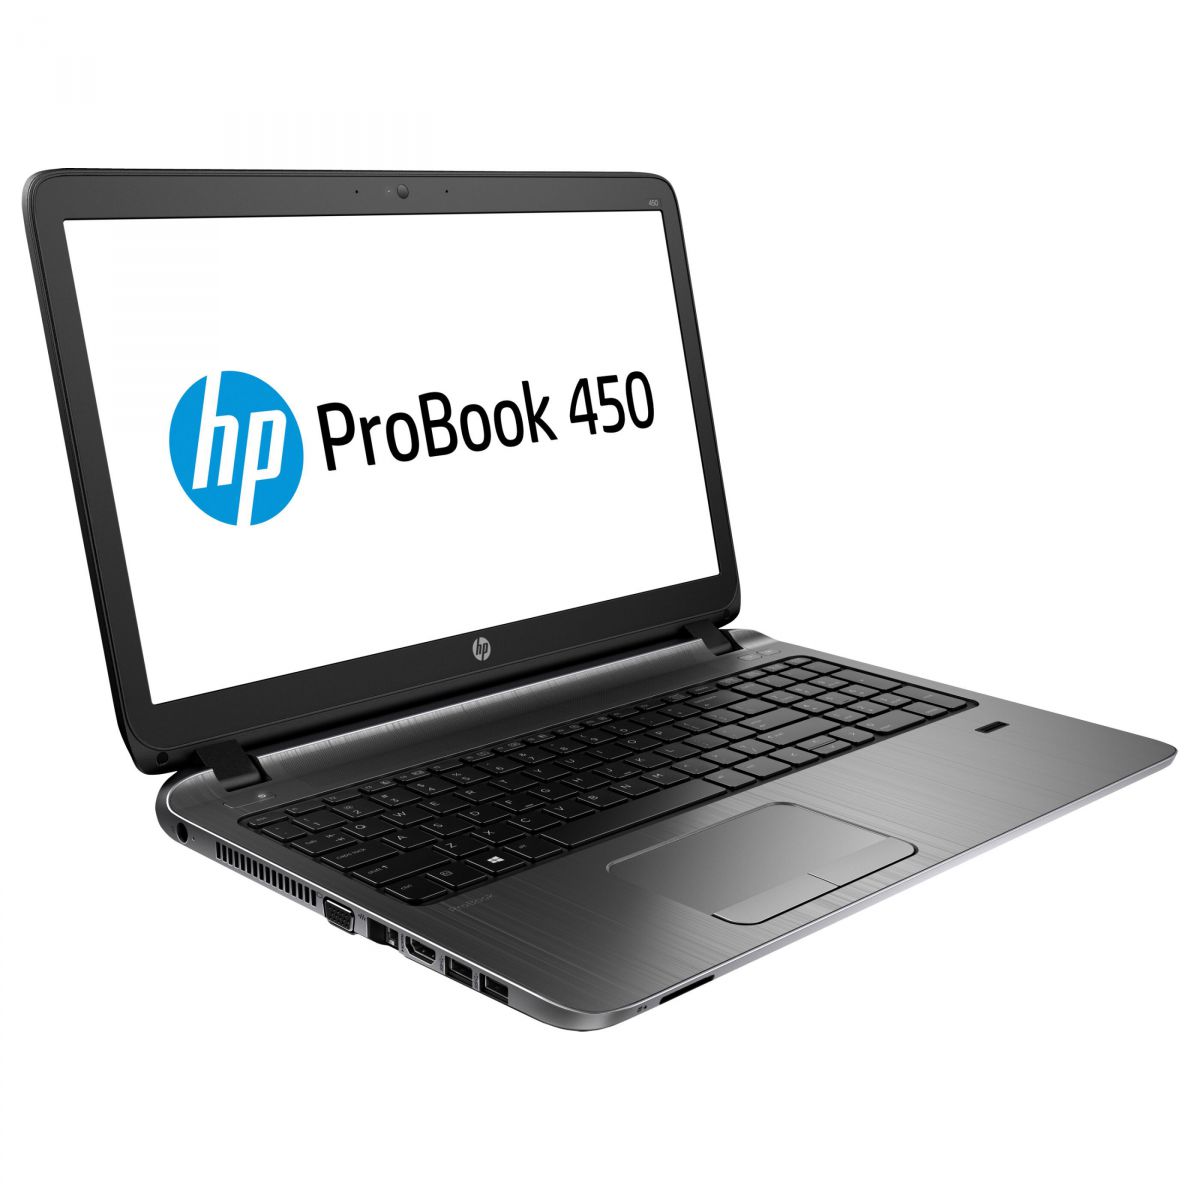 HP Probook 450 G2 (Intel Core i5-4210U/1.7 GHz/8GB/120GB SSD/Intel HD Graphics/15,6')